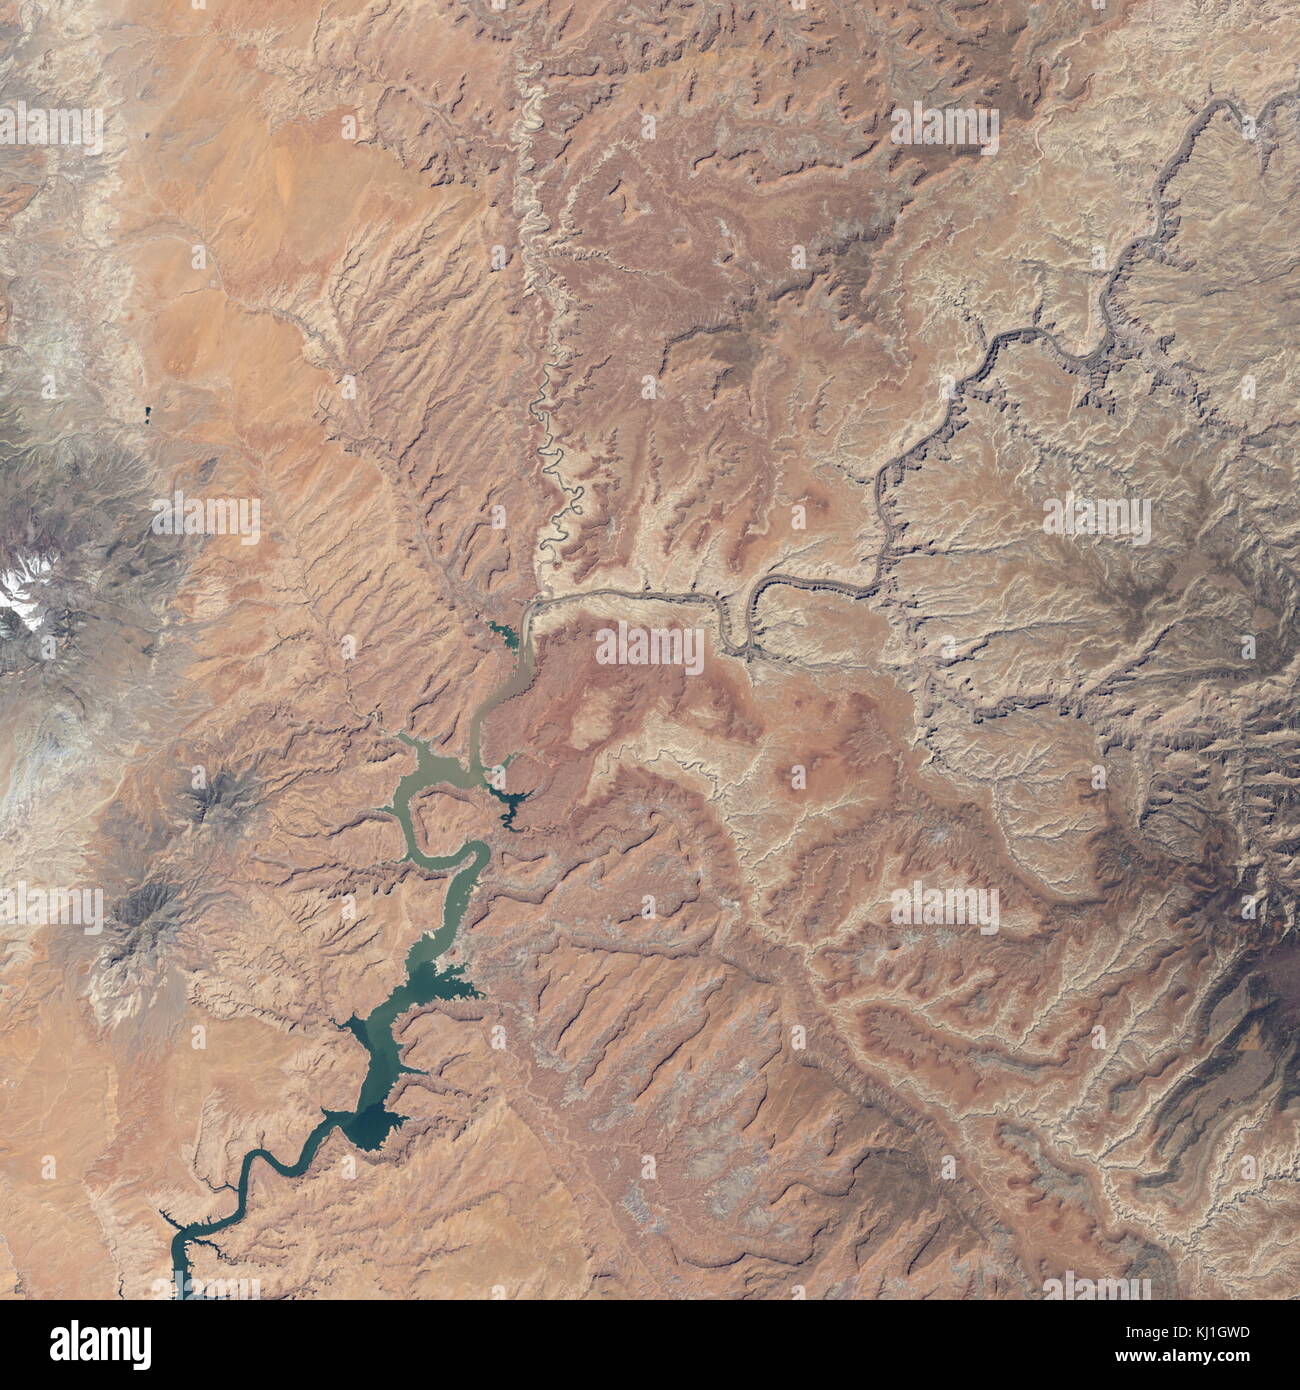 Lake Powell, est un réservoir sur la rivière Colorado, chevauchant la frontière entre l'Utah et l'Arizona (la plupart d'elle, avec pont en arc-en-ciel, est dans l'Utah). C'est le deuxième plus grand réservoir de capacité maximale de l'eau aux États-Unis derrière le Lac Mead. Image satellite, prises en 20101 Banque D'Images